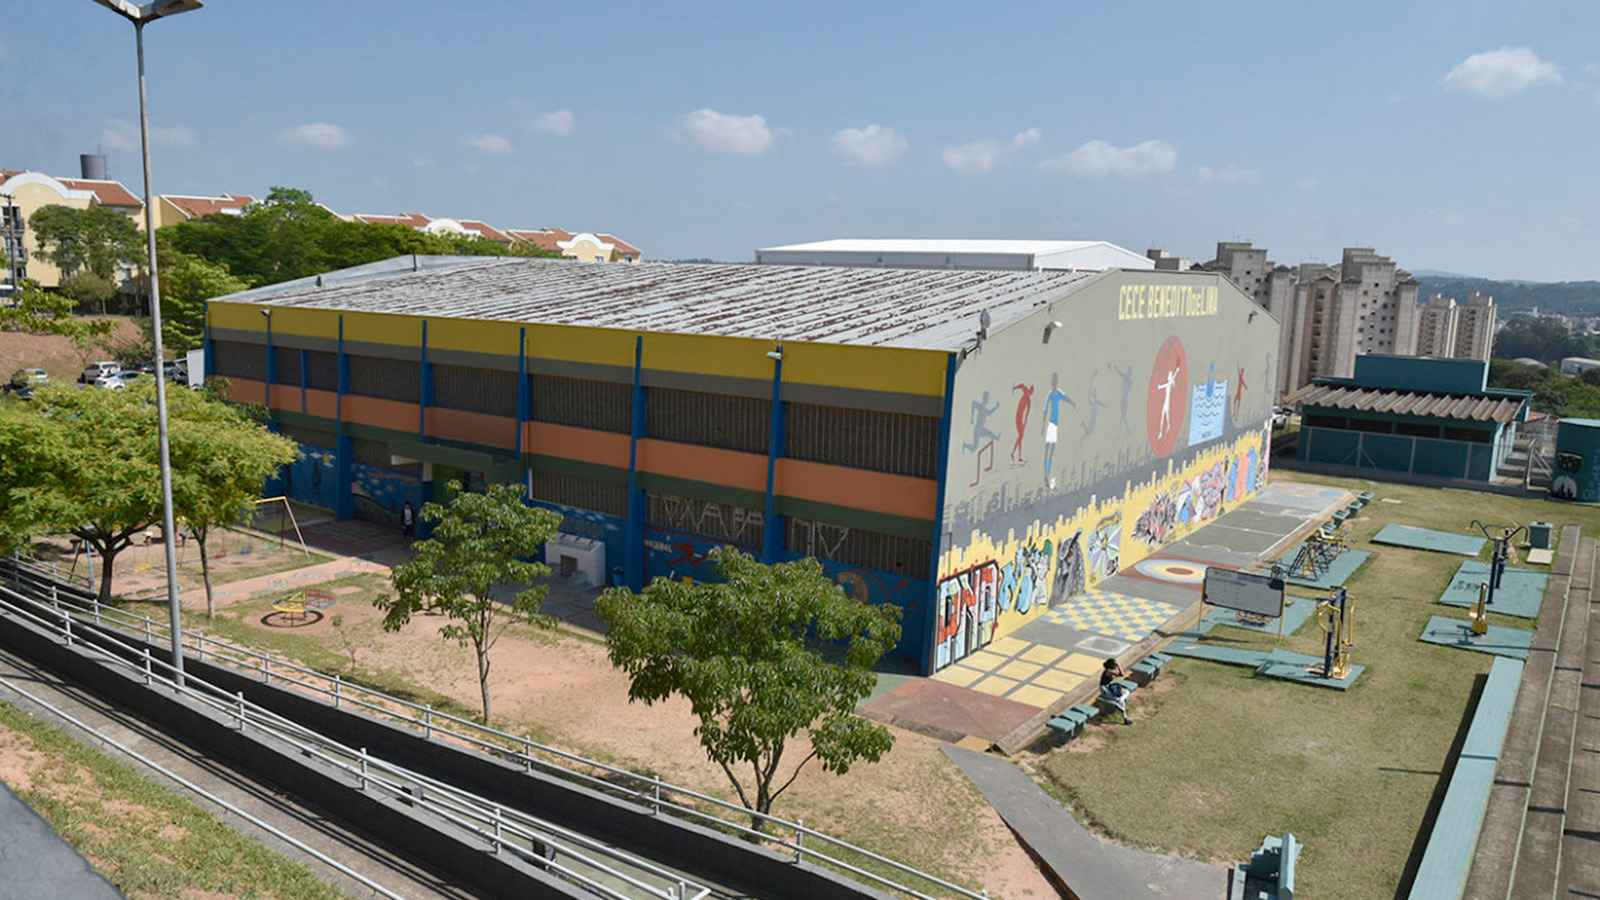 Vista aérea do Centro Esportivo Benedito De Lima em Jundiaí, mostrando o edifício colorido com murais esportivos, áreas de treinamento ao ar livre e a paisagem urbana ao fundo.